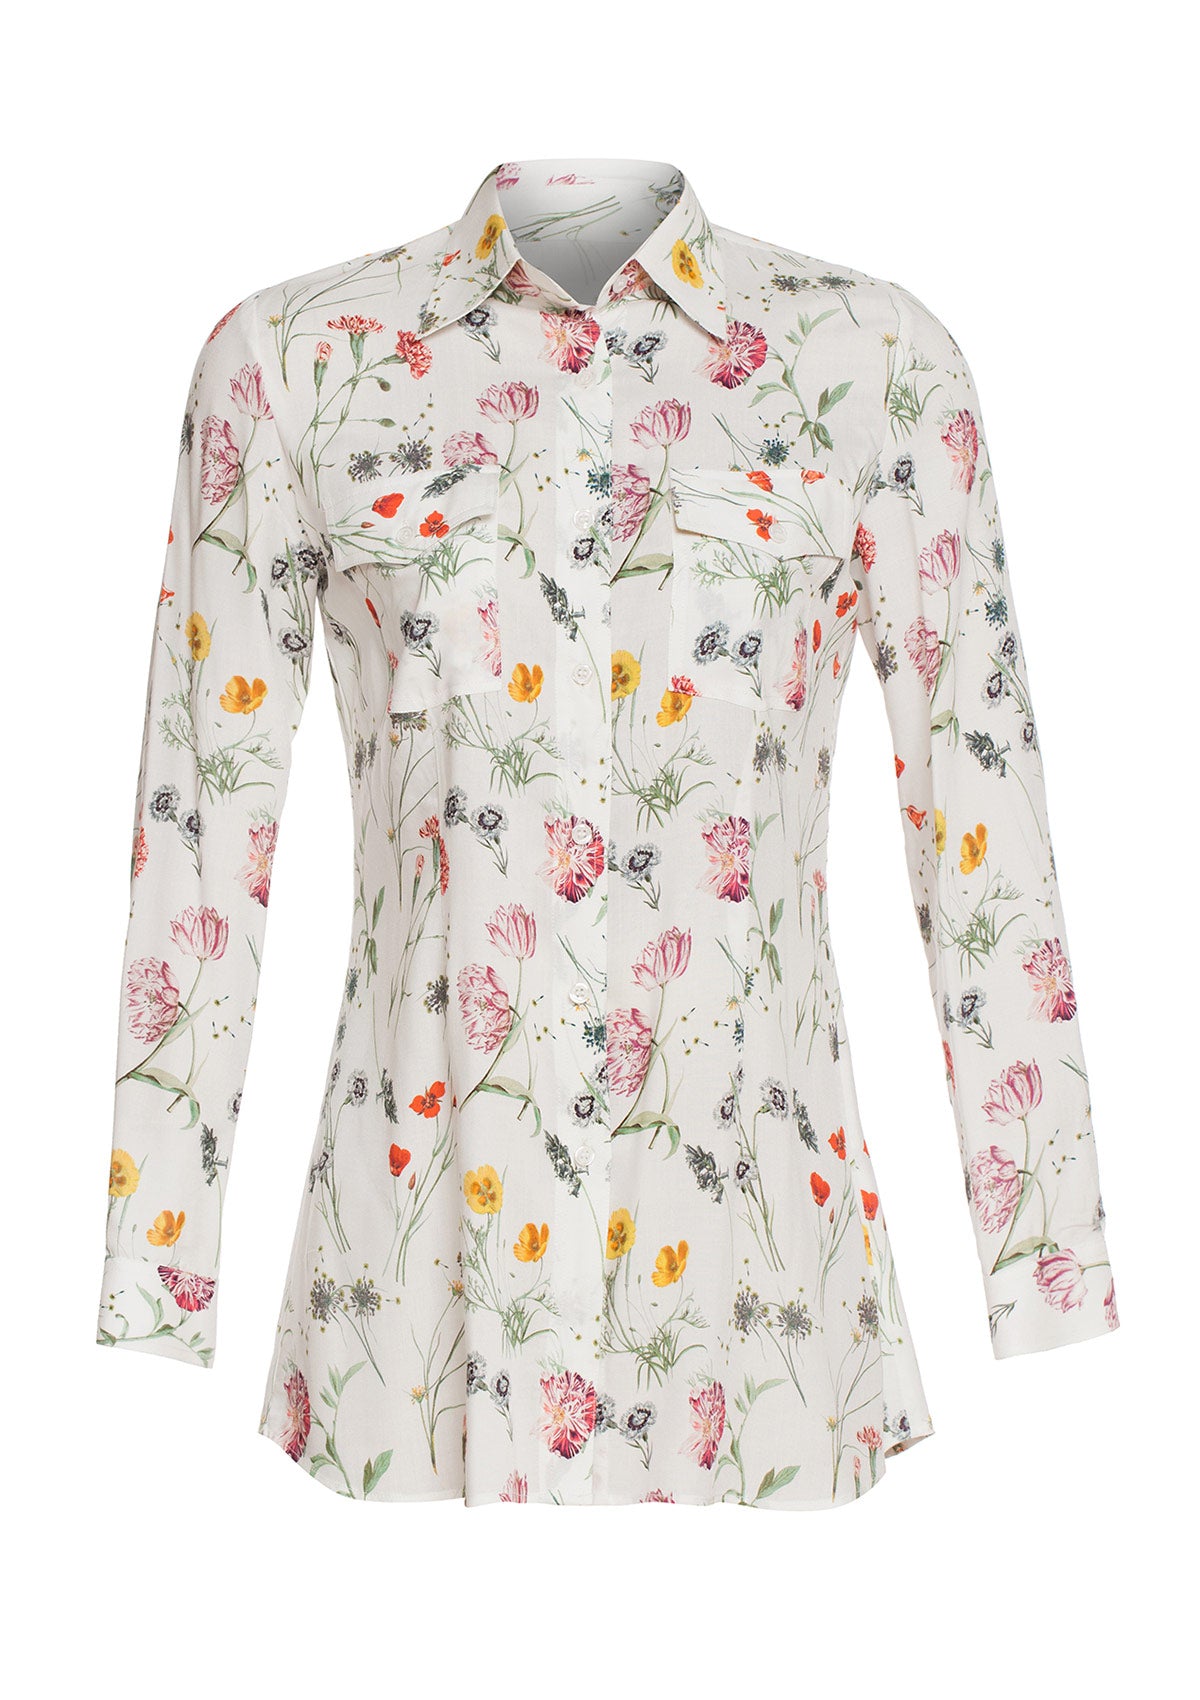 Дамска ленена риза с флорални мотиви DAISY ленено облекло свободна кройка цветен десен